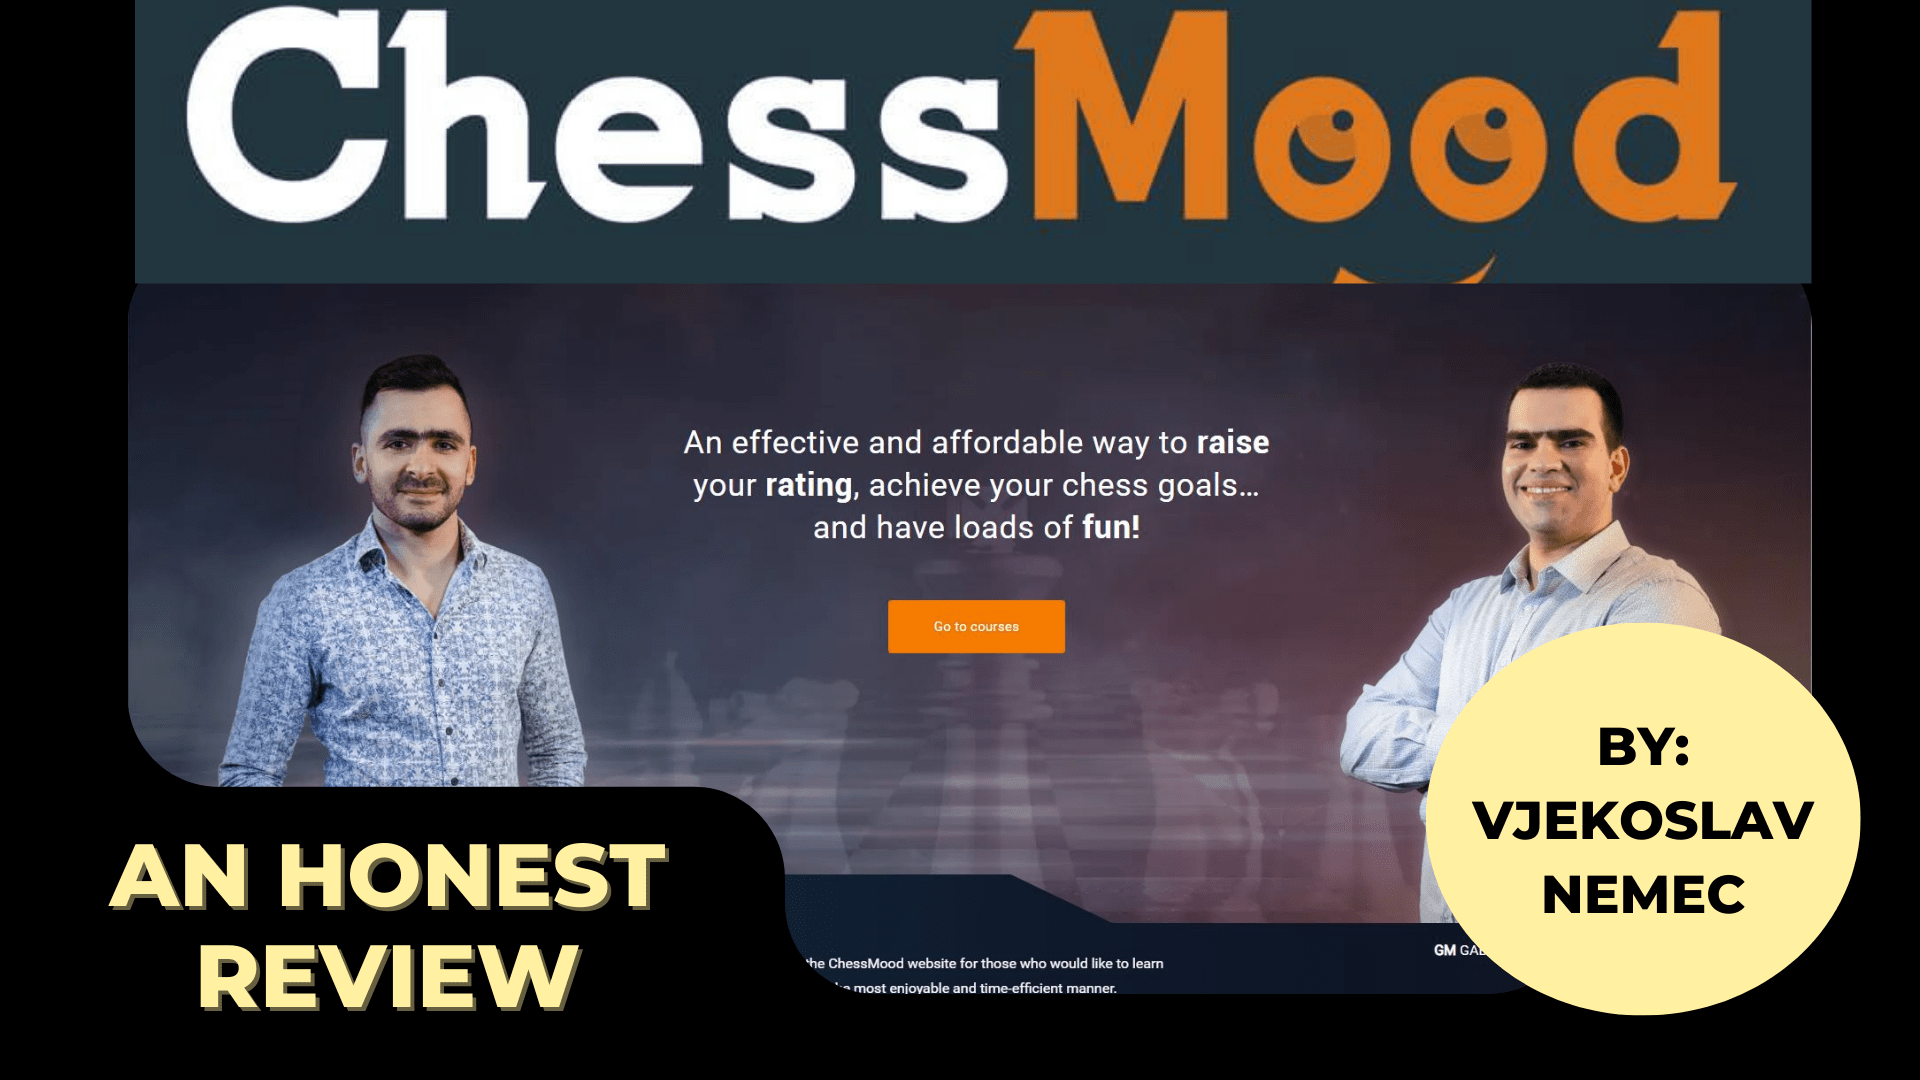 ichess.net refund scam : r/chess